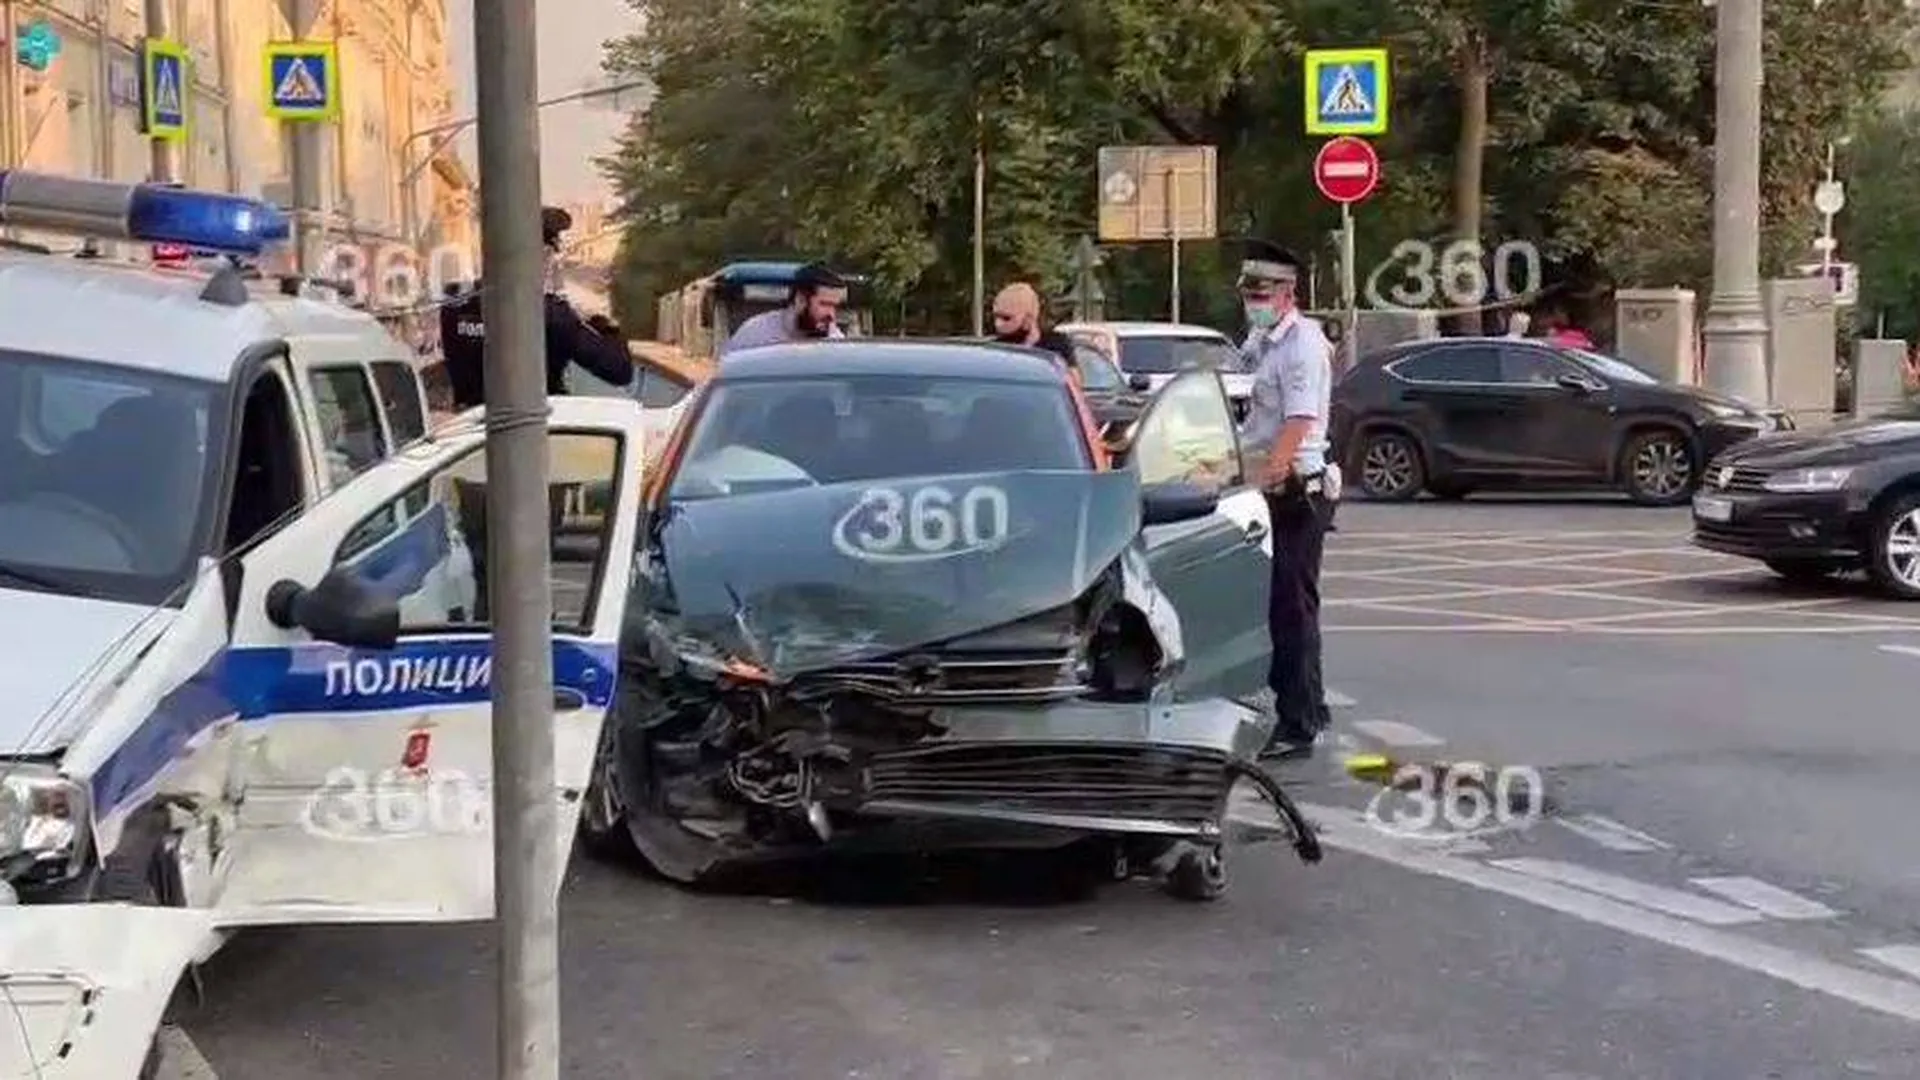 Машины каршеринга и полиции попали в ДТП в Москве. Видео